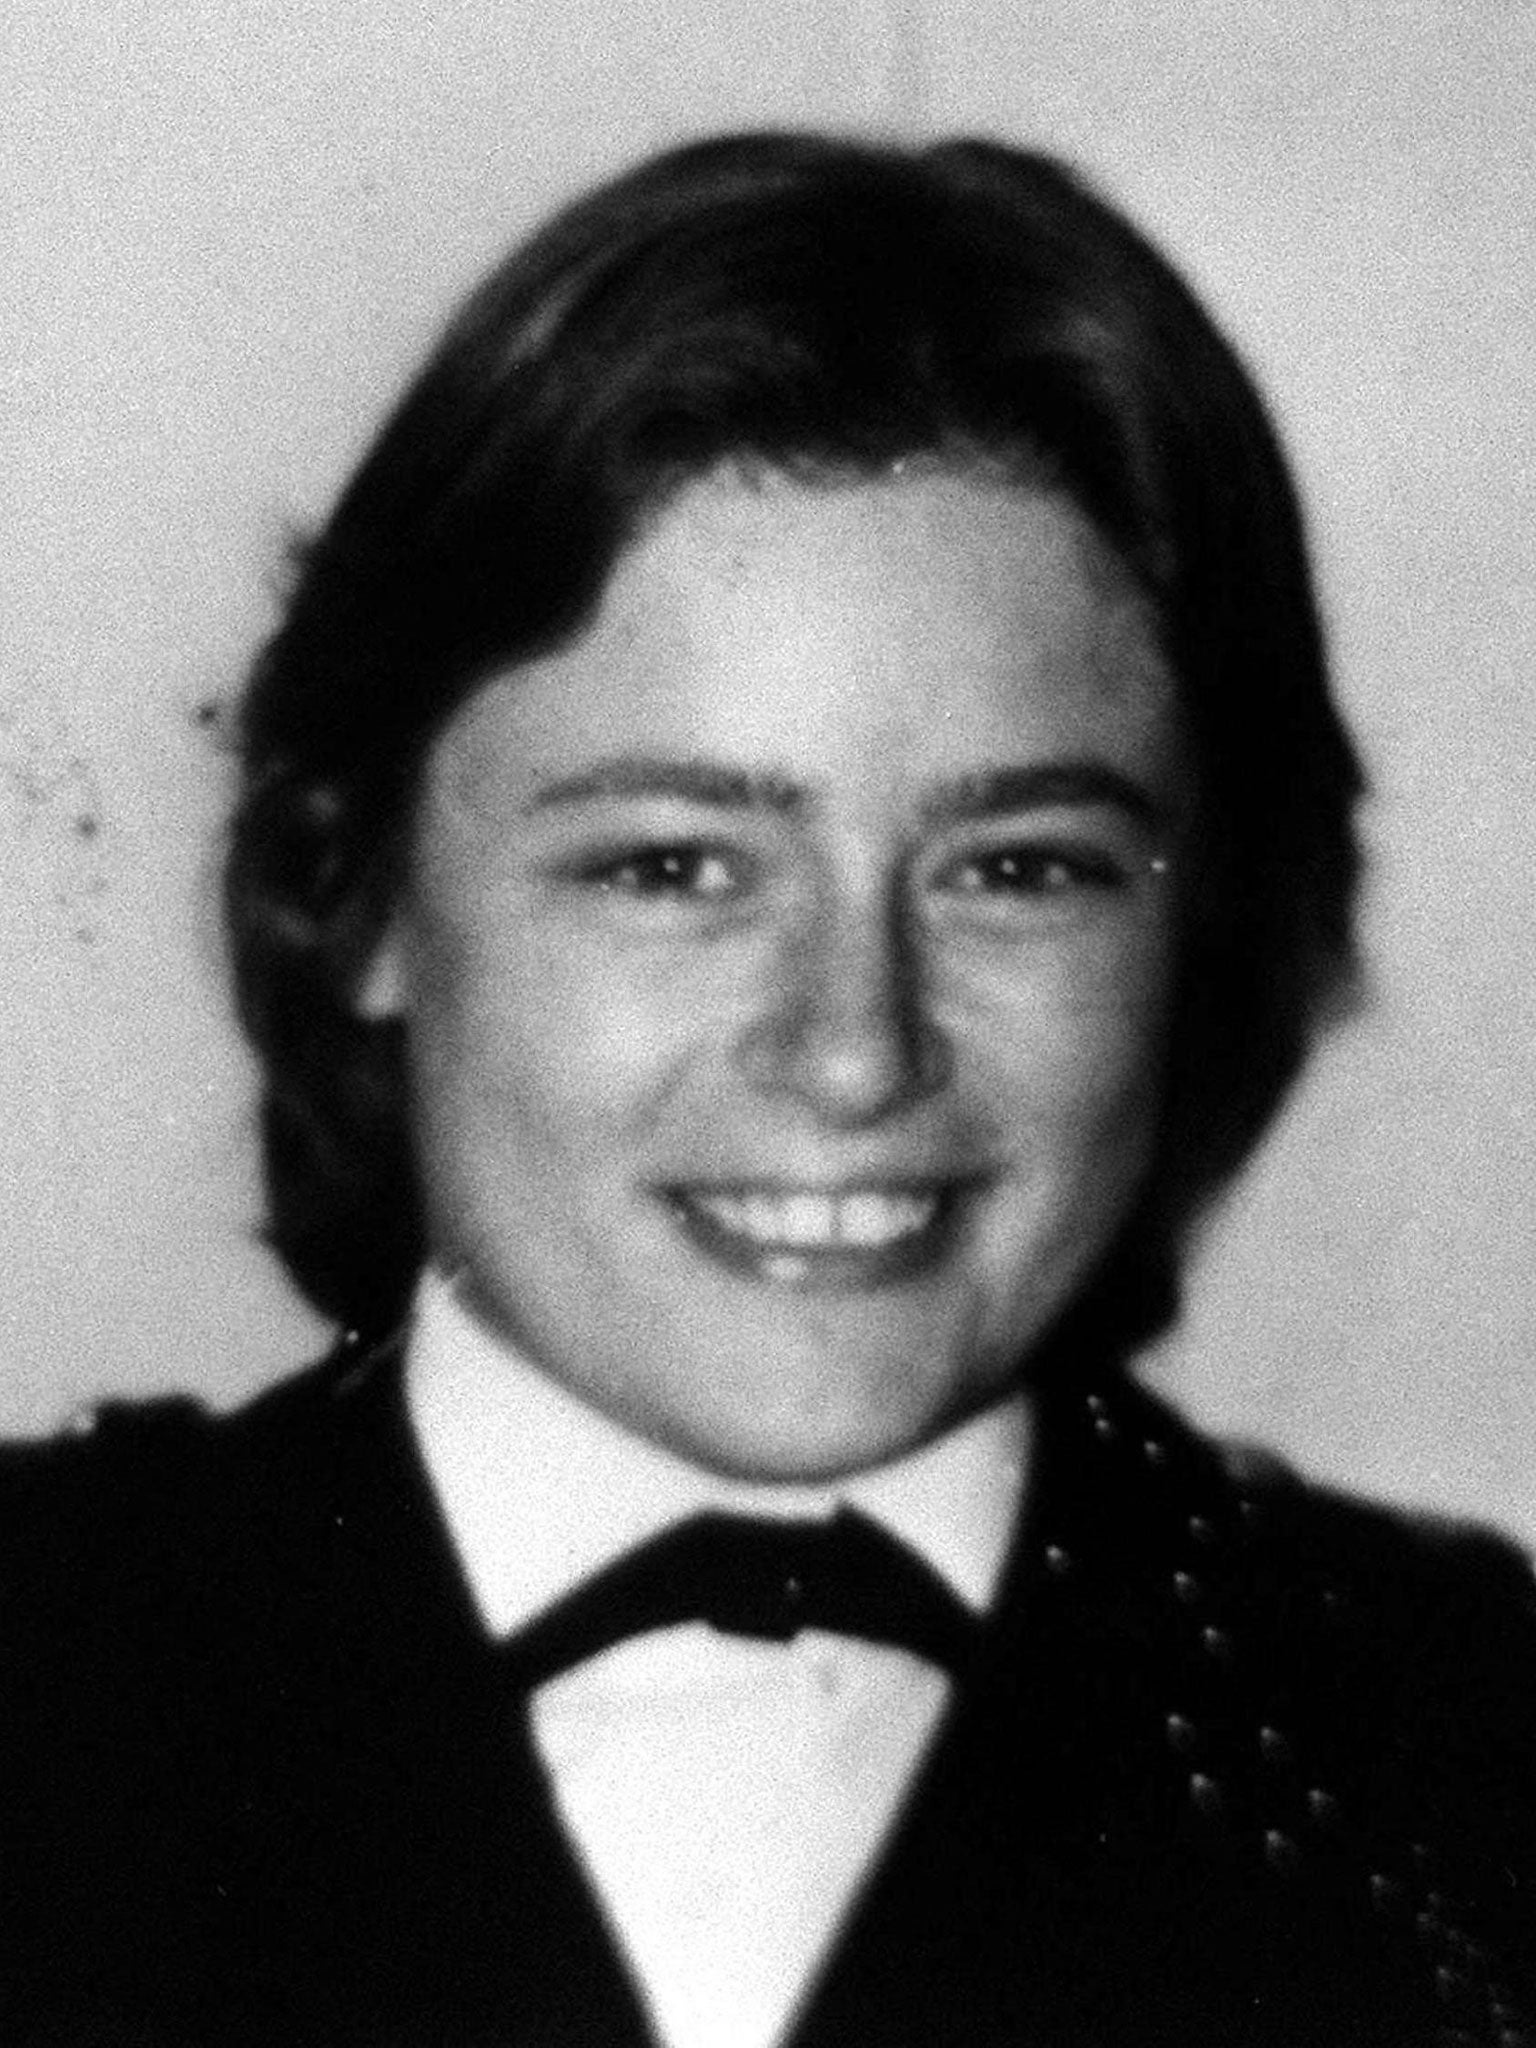 Yvonne Fletcher was shot outside the Libyan embassy in 1984